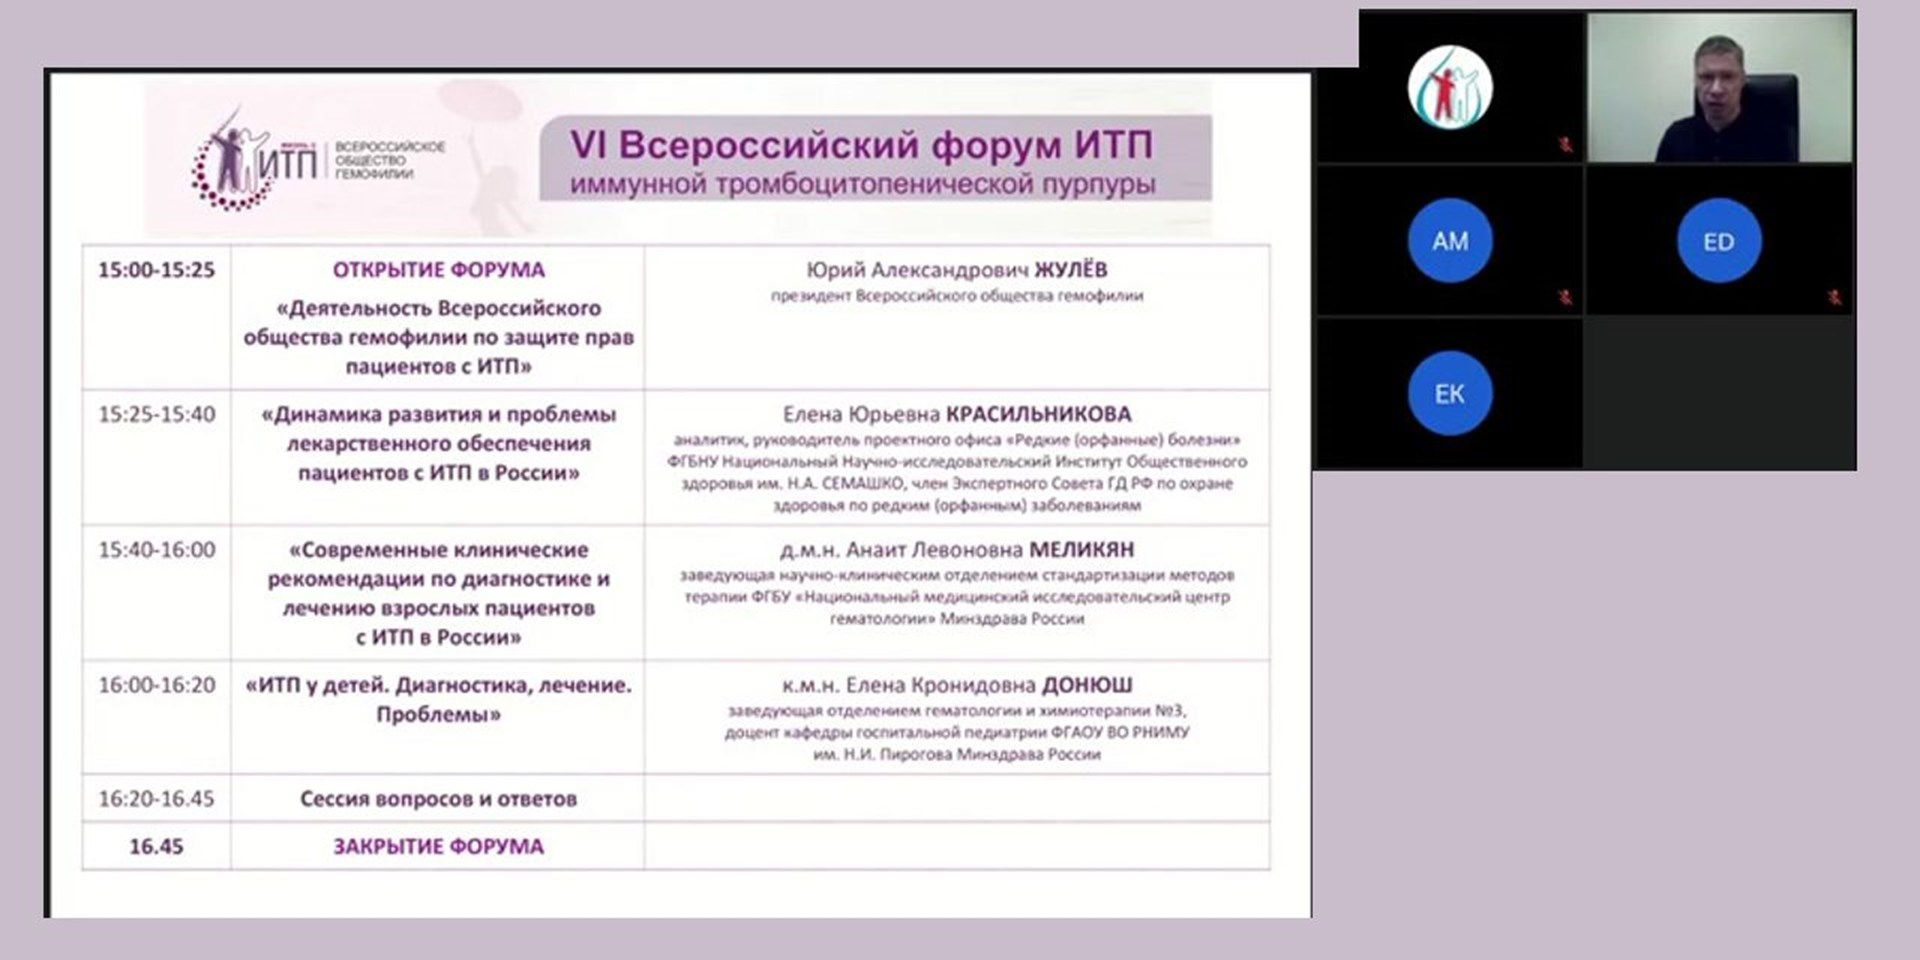 Состоялся VI Всероссийский форум имунной тромбоцитопенической пурпуры (ИТП)